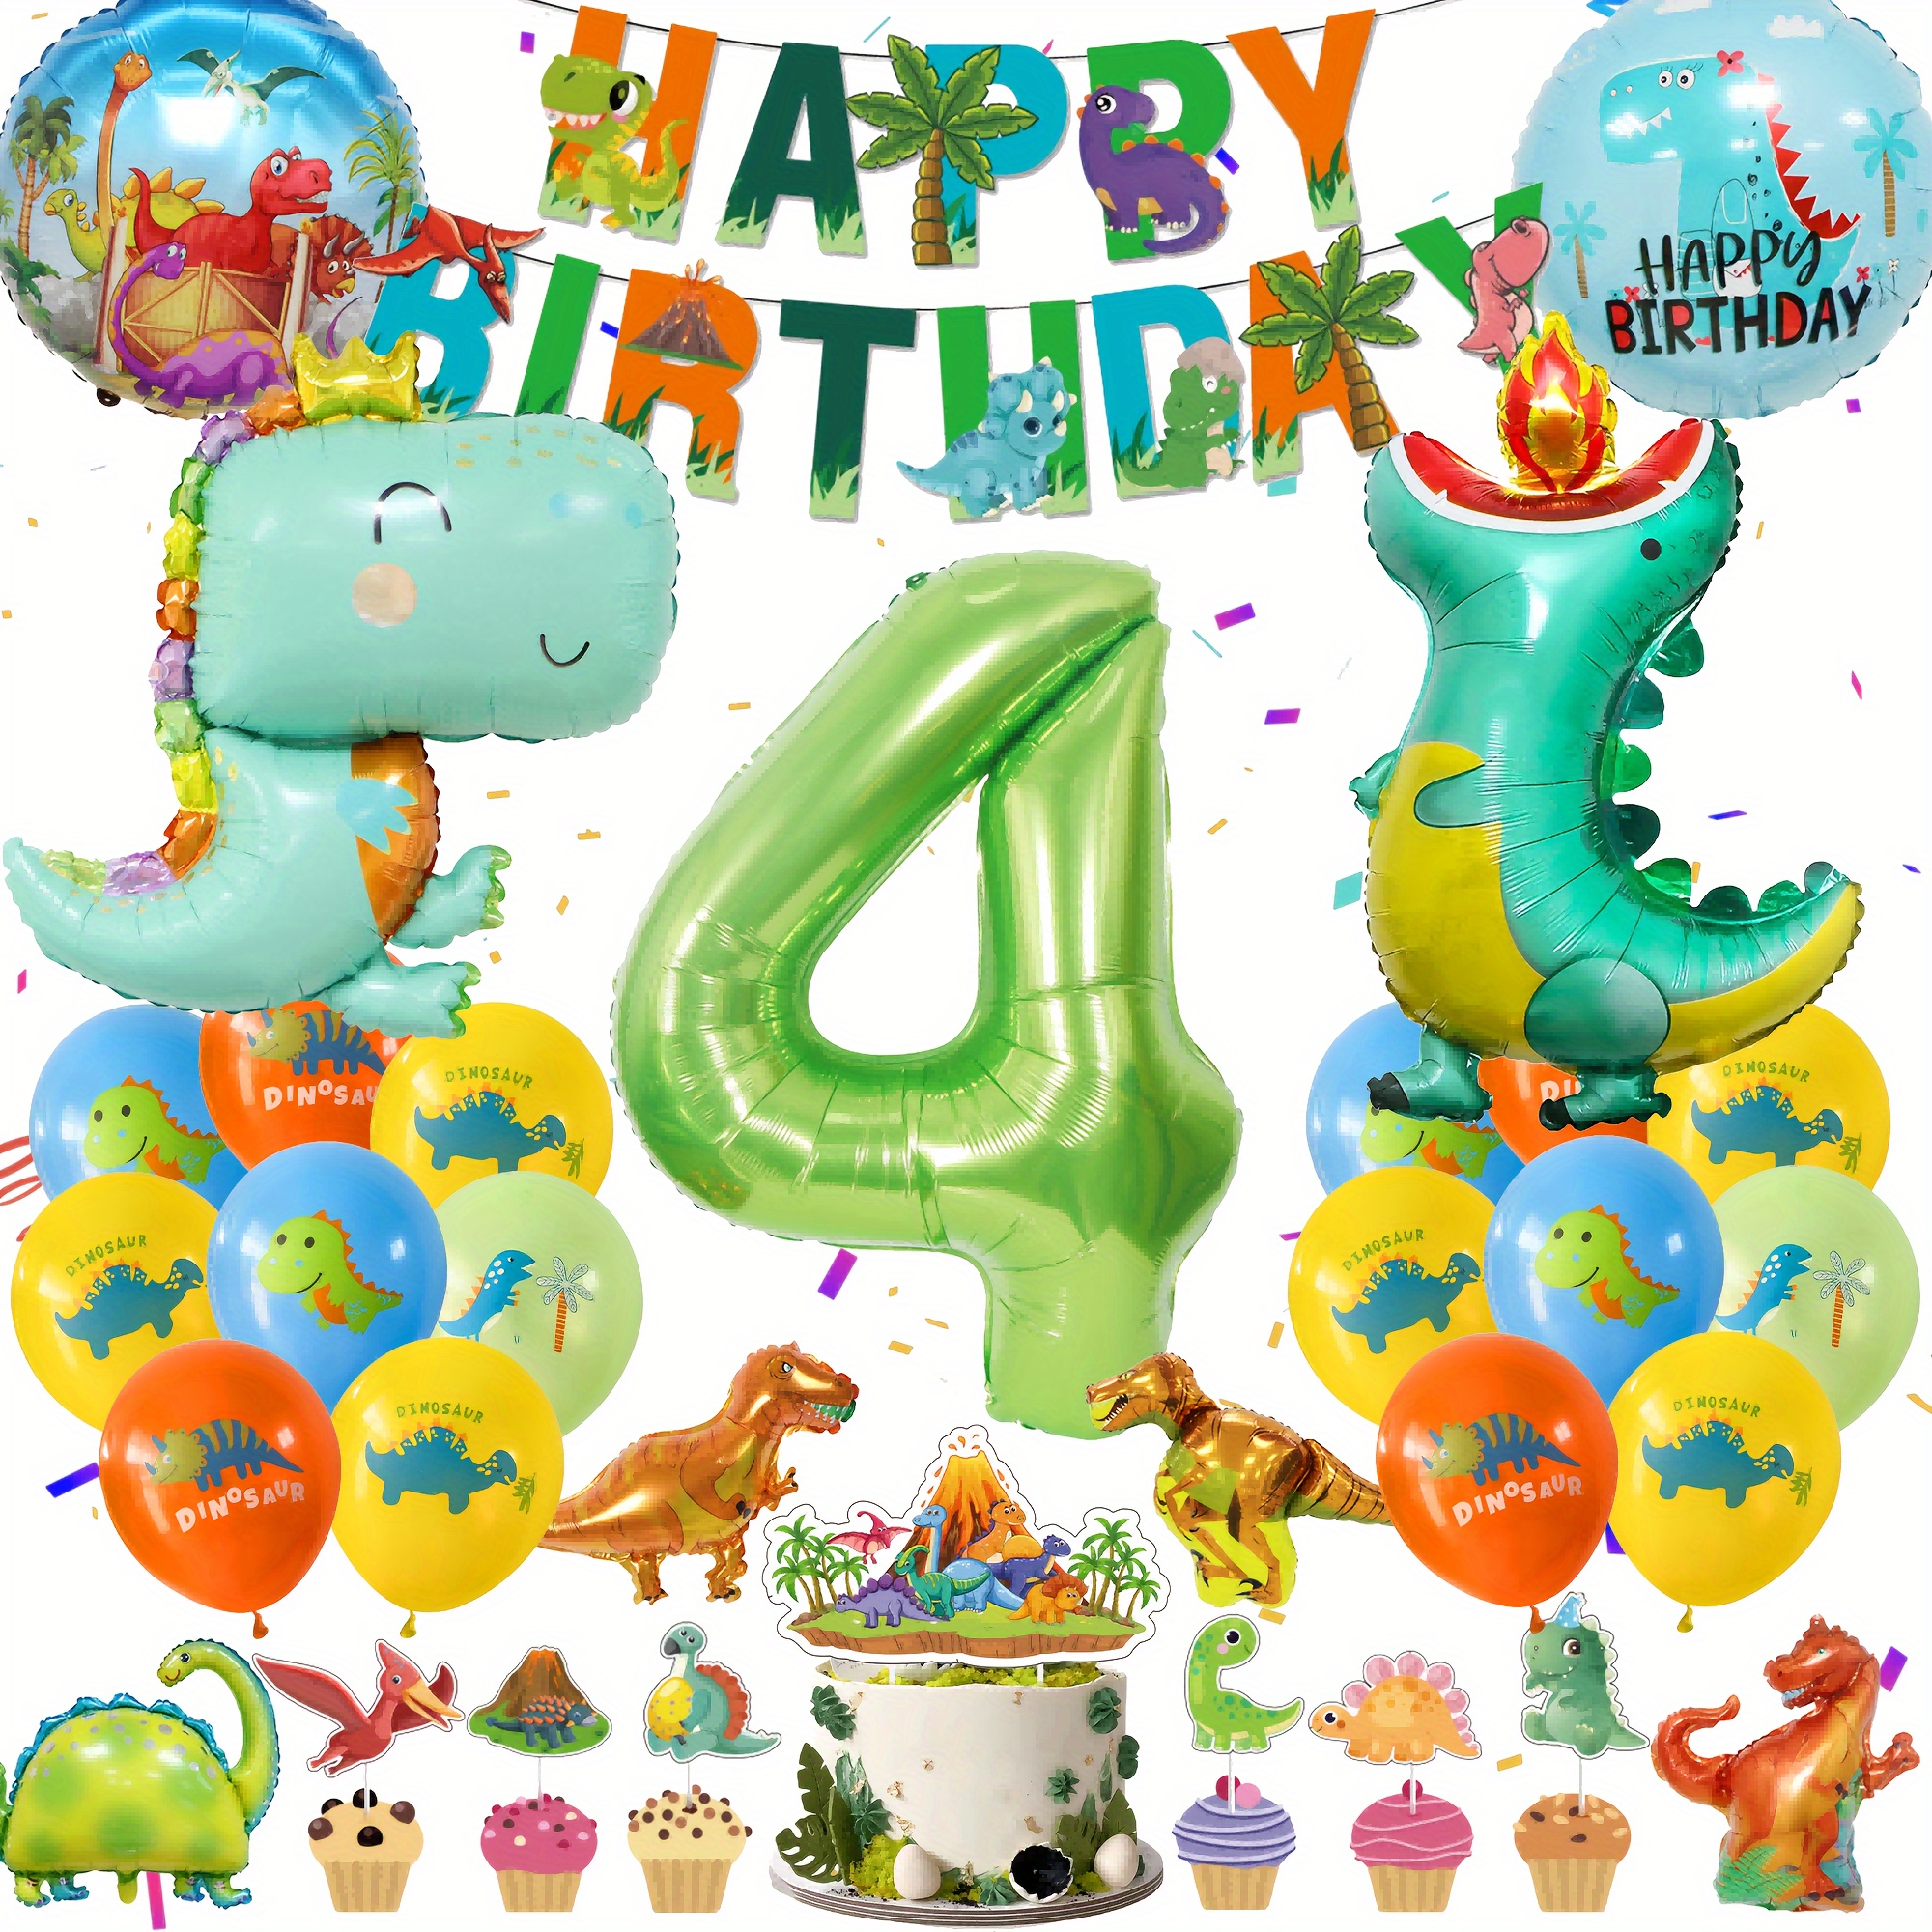  110 decoraciones de fiesta de cumpleaños de dinosaurios,  pegamento de puntos de cinta, decoraciones de fiesta de cumpleaños de  dinosaurios con pancarta de feliz cumpleaños, decoración de fiesta de  dinosaurios para